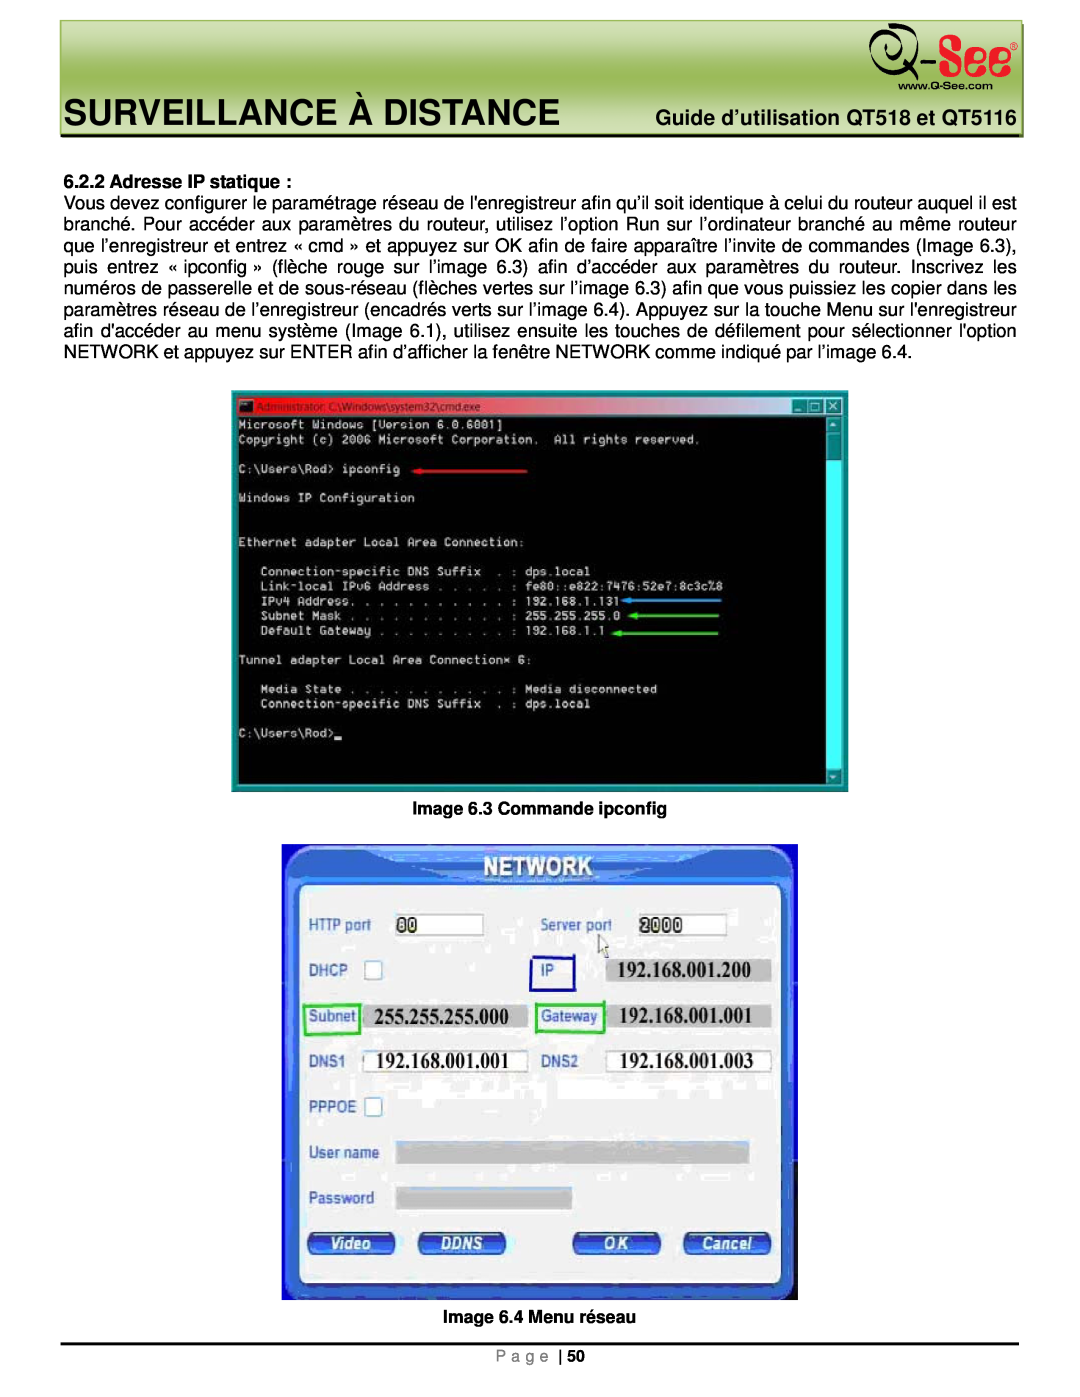 Q-See manual Surveillance À Distance, Guide d’utilisation QT518 et QT5116, Adresse IP statique 